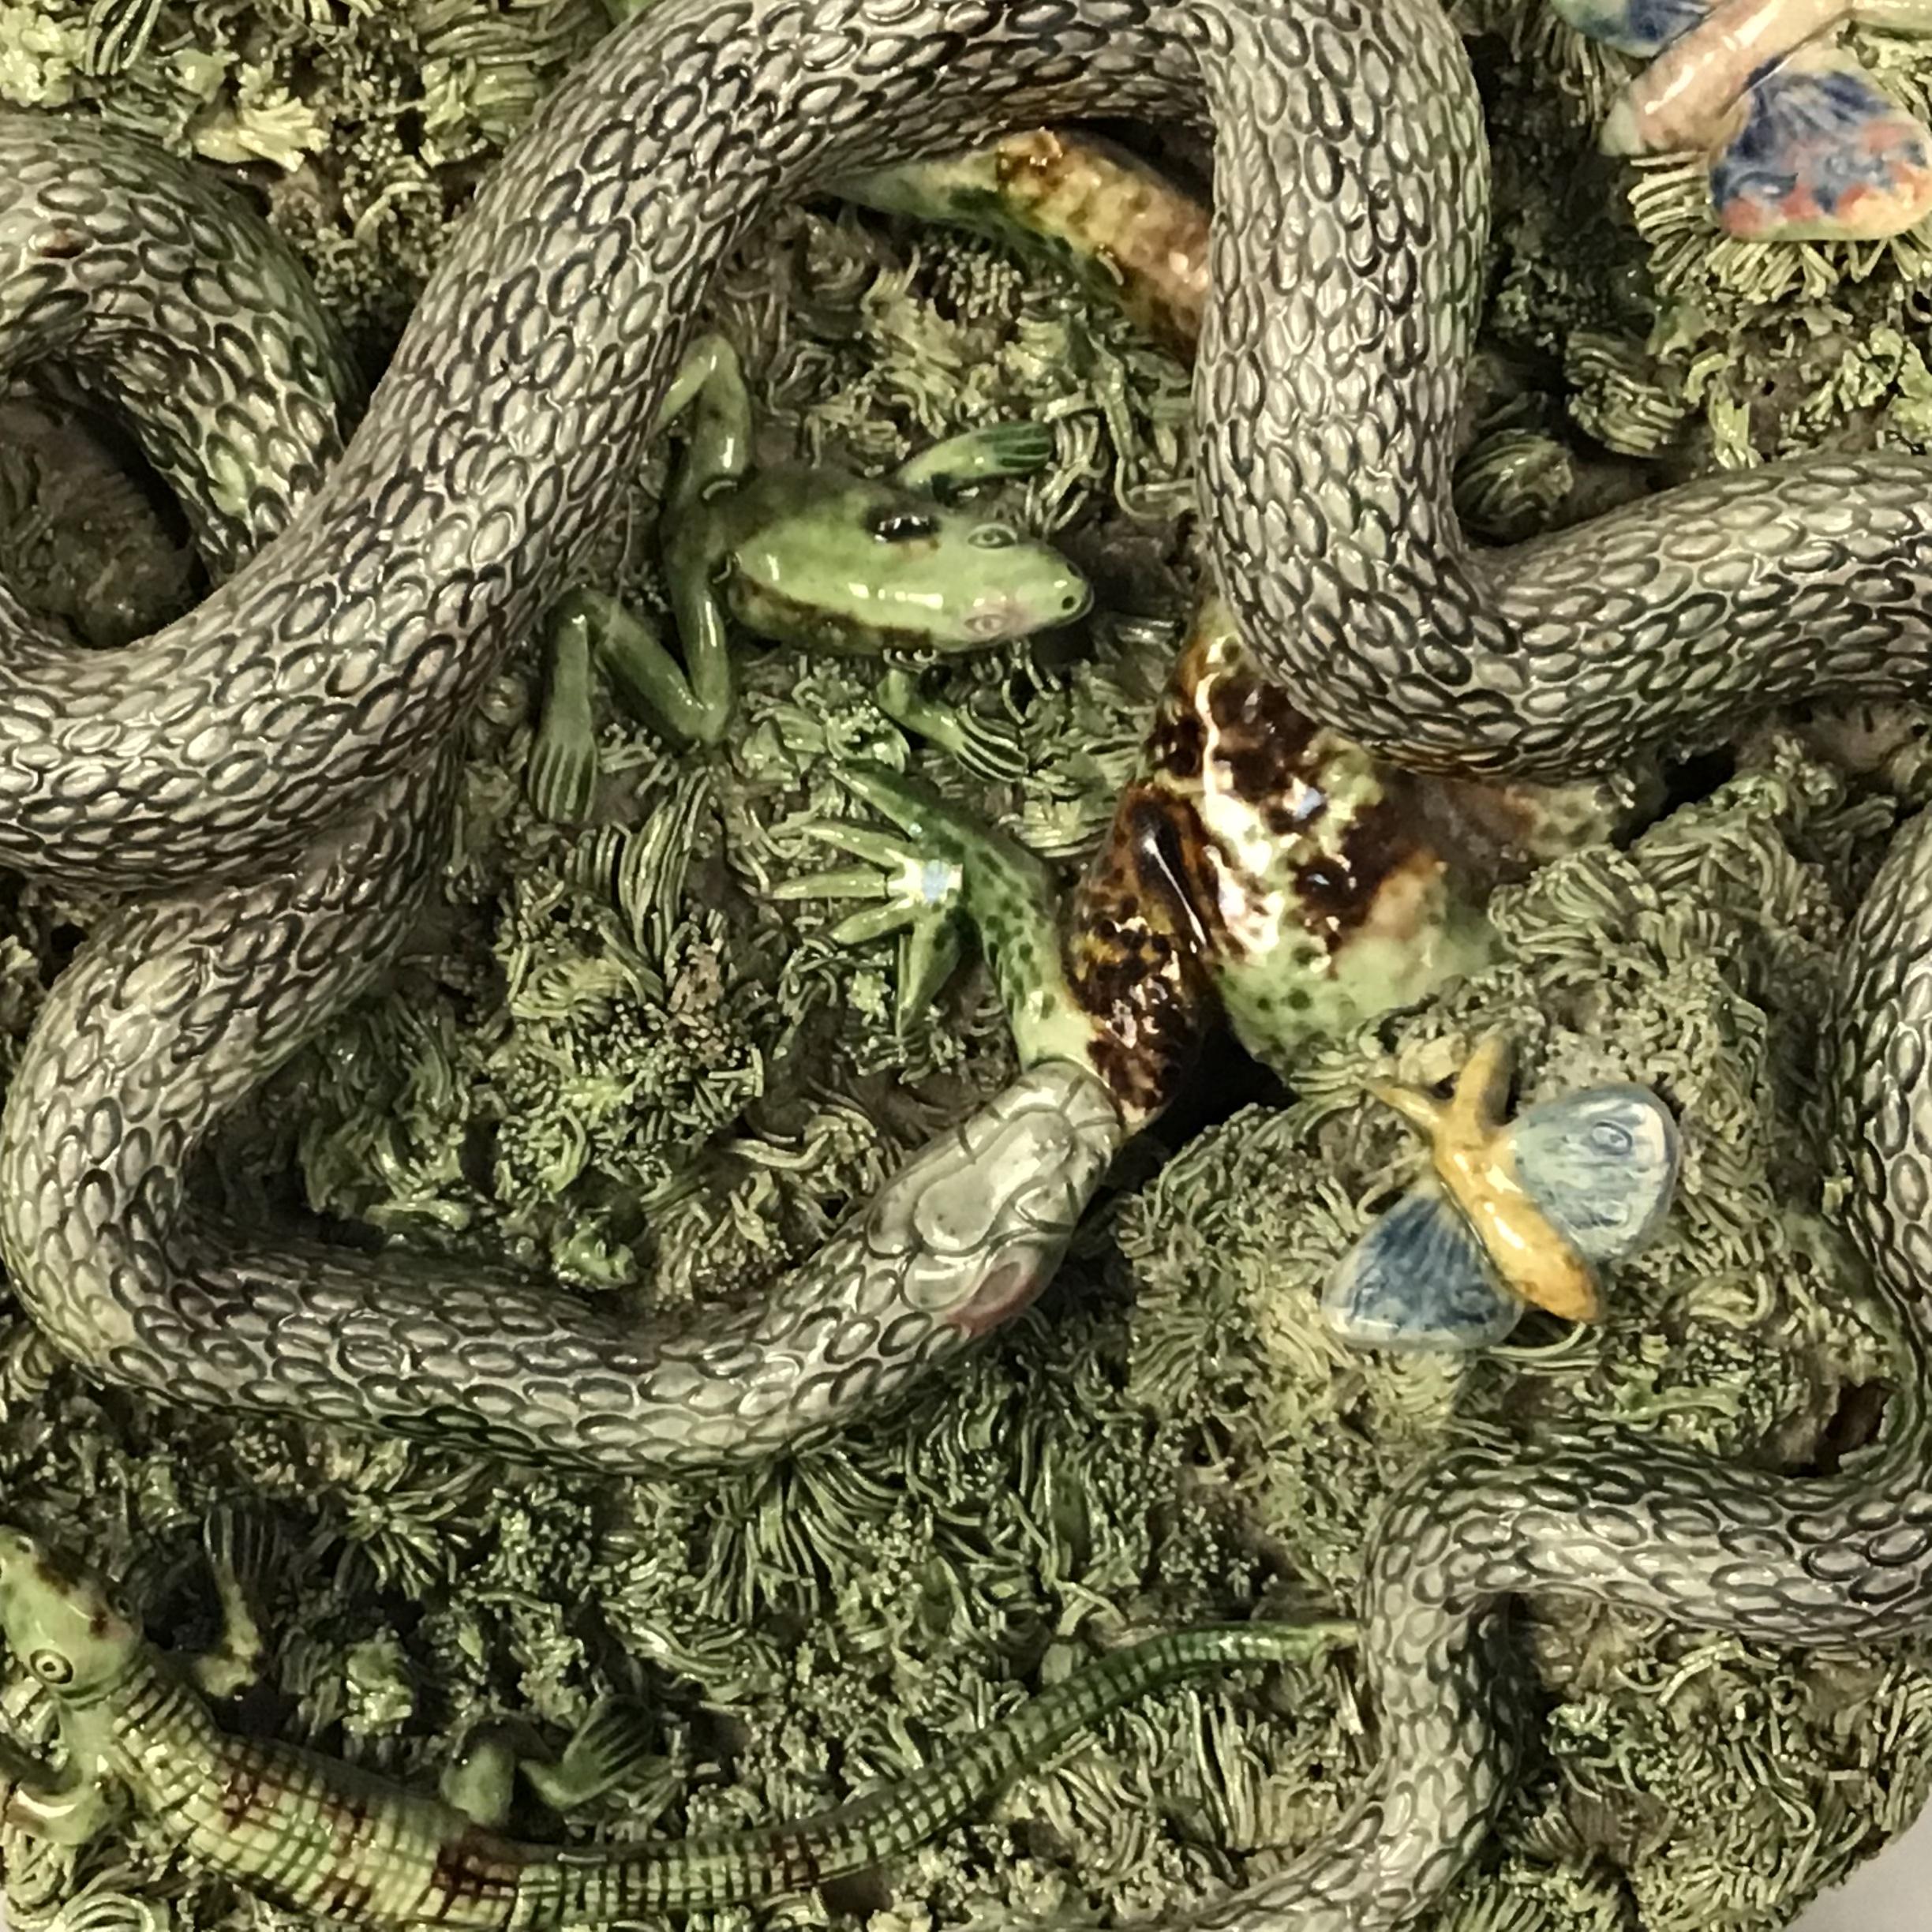 Assiette de style Palissy en majolique portugaise du 19e siècle avec un grand serpent cherchant dans une touffe de mousse, signée Jose Alves Cunha (Caldas da Rainha) avec serpent, ver, chenille, papillon, grenouille, crocodile. Marque imprimée au